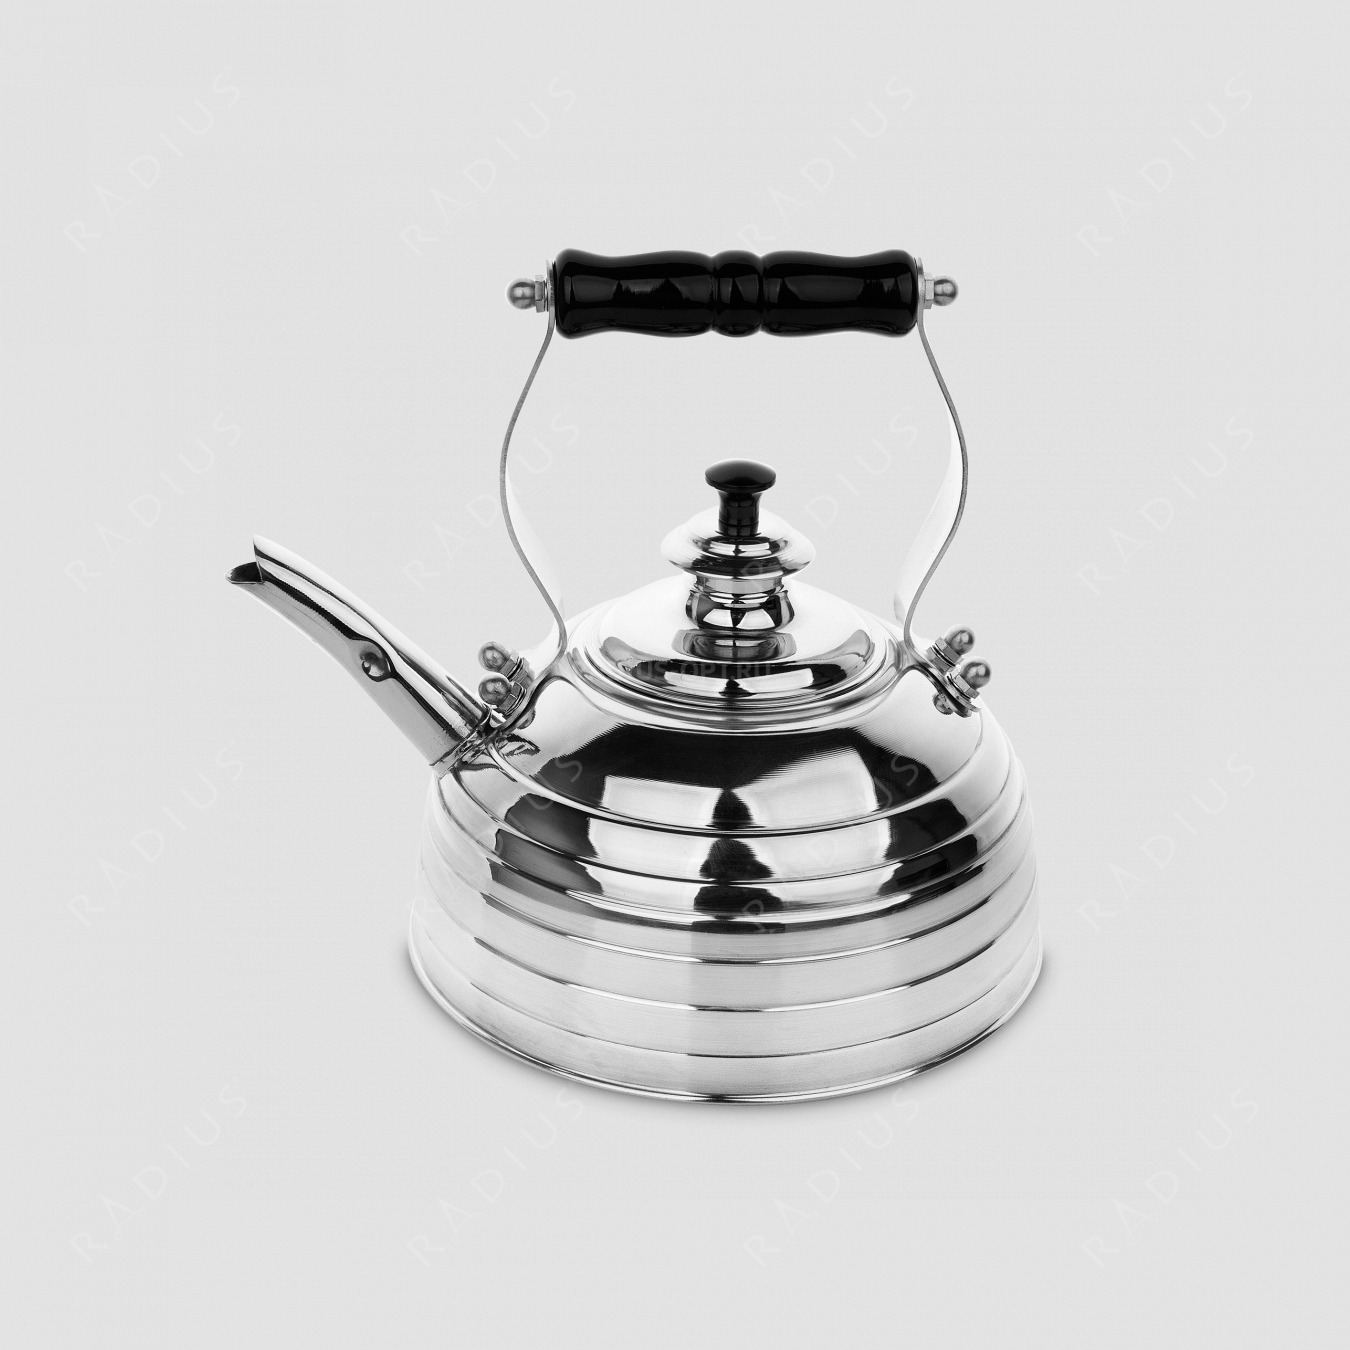 Чайник для плиты (газ и электро) эдвардианской ручной работы, медь с хромированной отделкой, объем 1,7 л, серия Beehive, RICHMOND, Великобритания